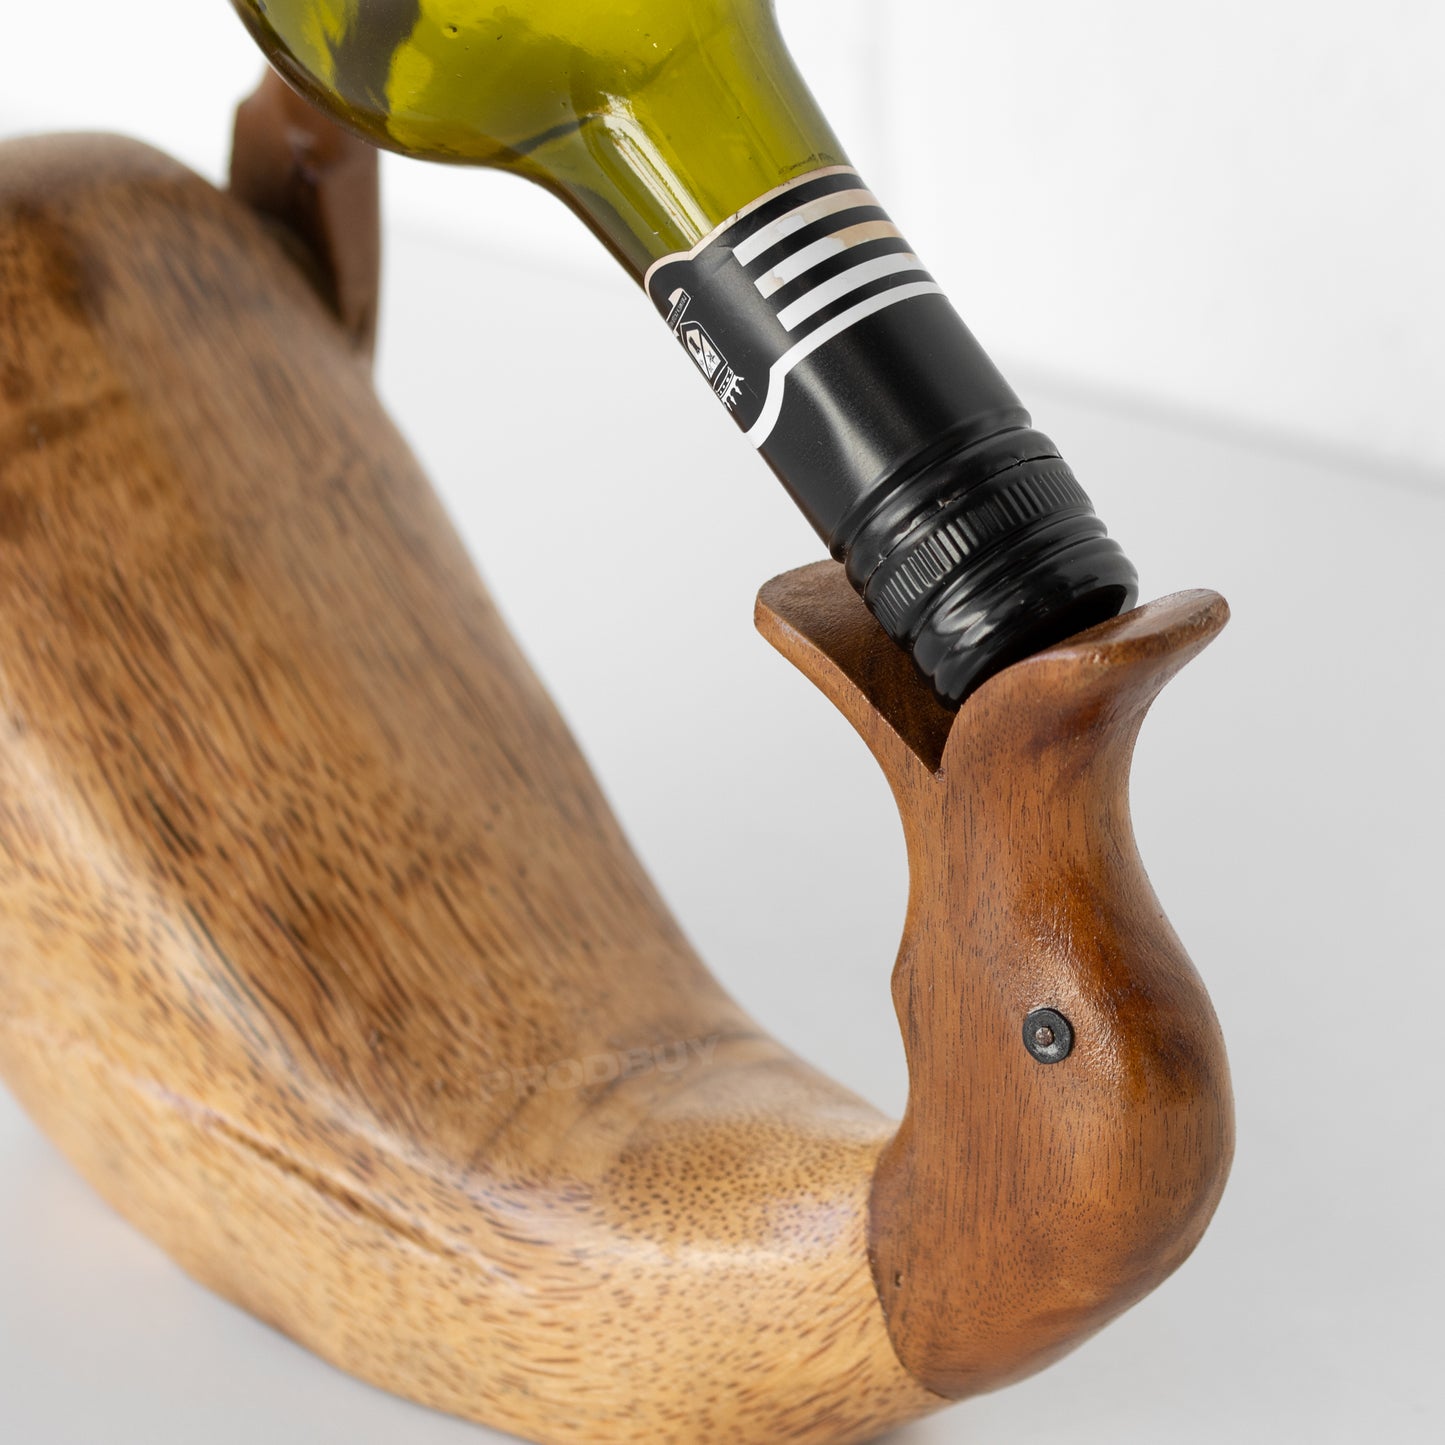 Drunken Duck Wooden Wine Bottle Holder Ornament